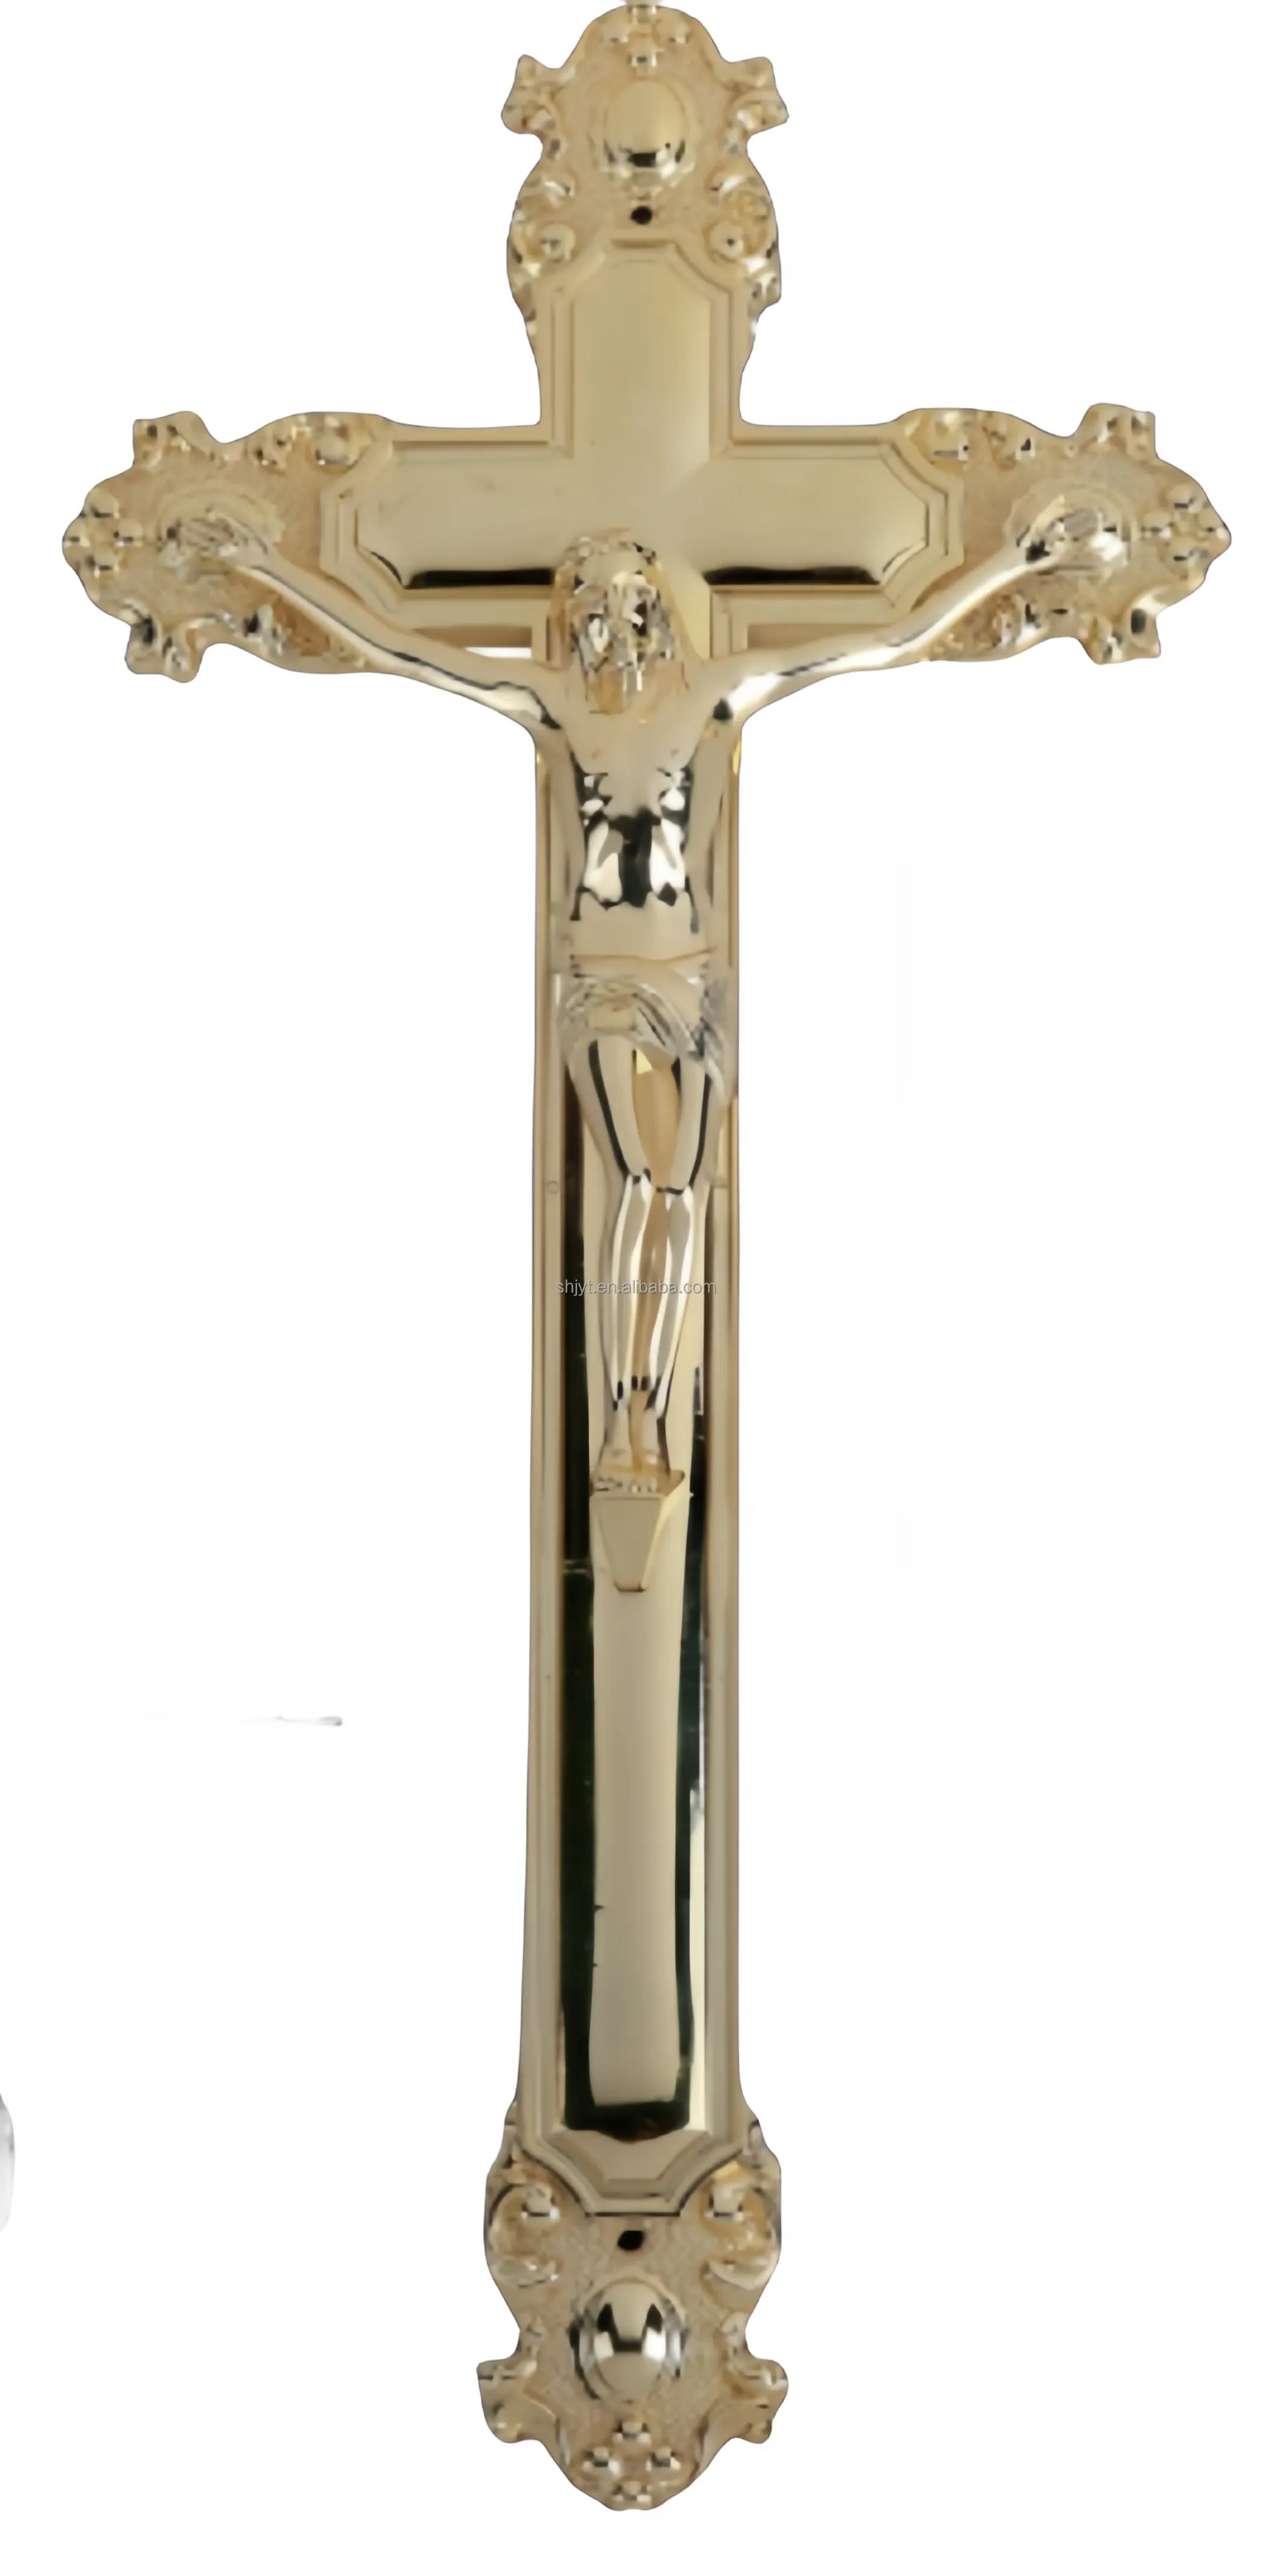 Wholesale Prices Casket Accessories Funeral Casket Cross Coffin Crucifix Jesus Casket Lace